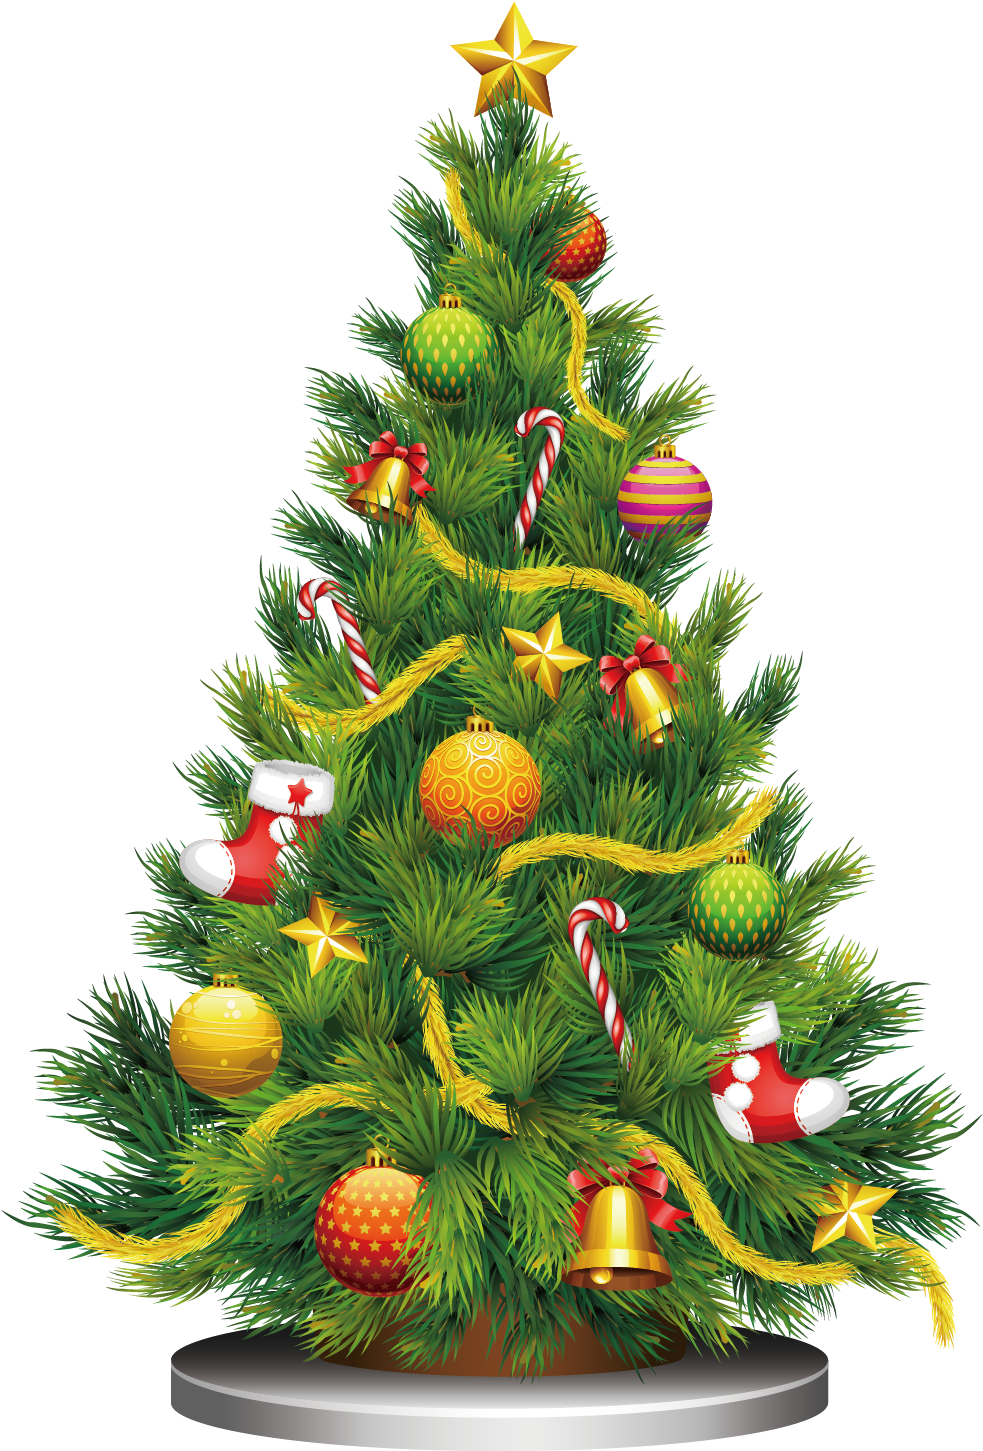 Santa Claus Christmas Tree Gift Clip Art - Santa Claus Christmas Tree Gift Clip Art (2362x2362)